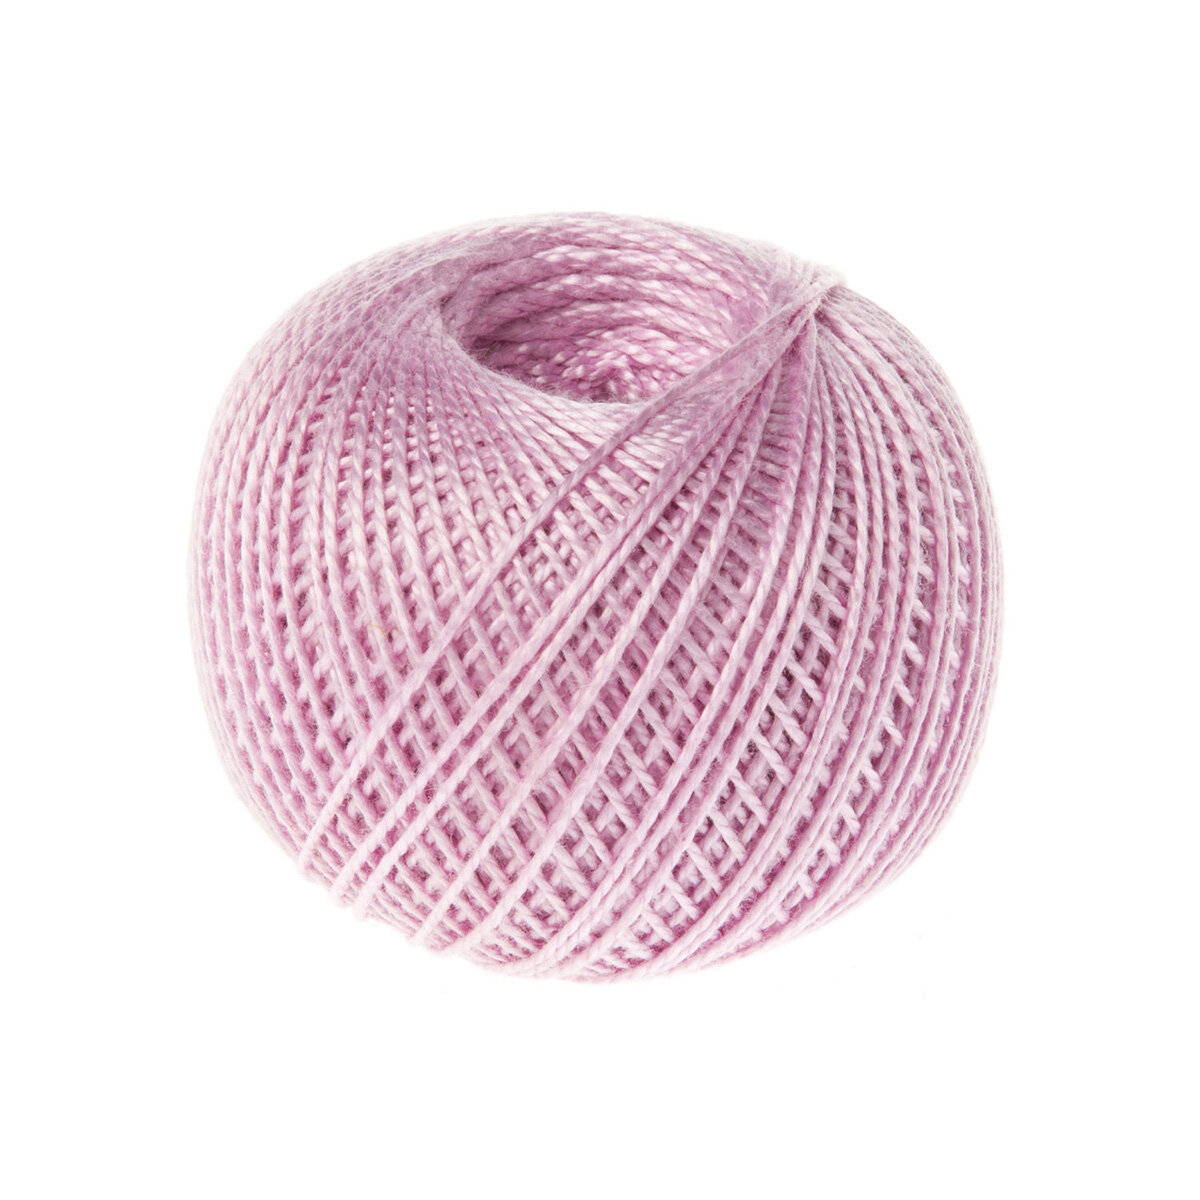 Нитки для вязания и плетения 'ирис' (100% хлопок), 25г, 150м (1702 бледно-сиреневый), 20 мотков